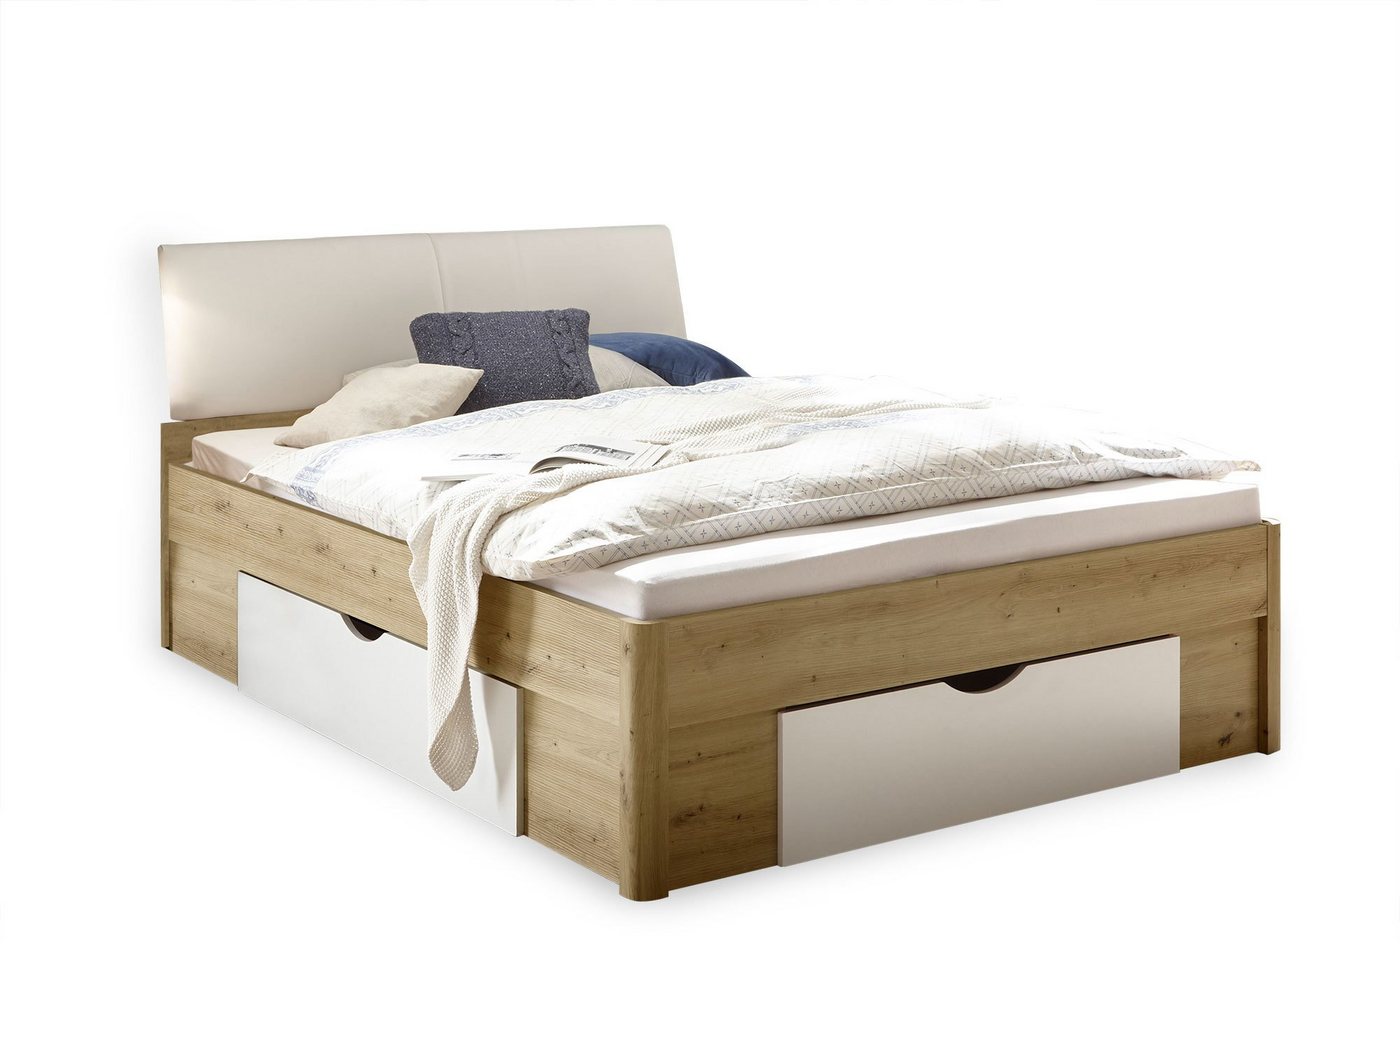 Moebel-Eins Kinderbett, DELGARO Bett / Jugendbett 140x200 cm, Material Dekorspanplatte, eichefarbig/weiss von Moebel-Eins